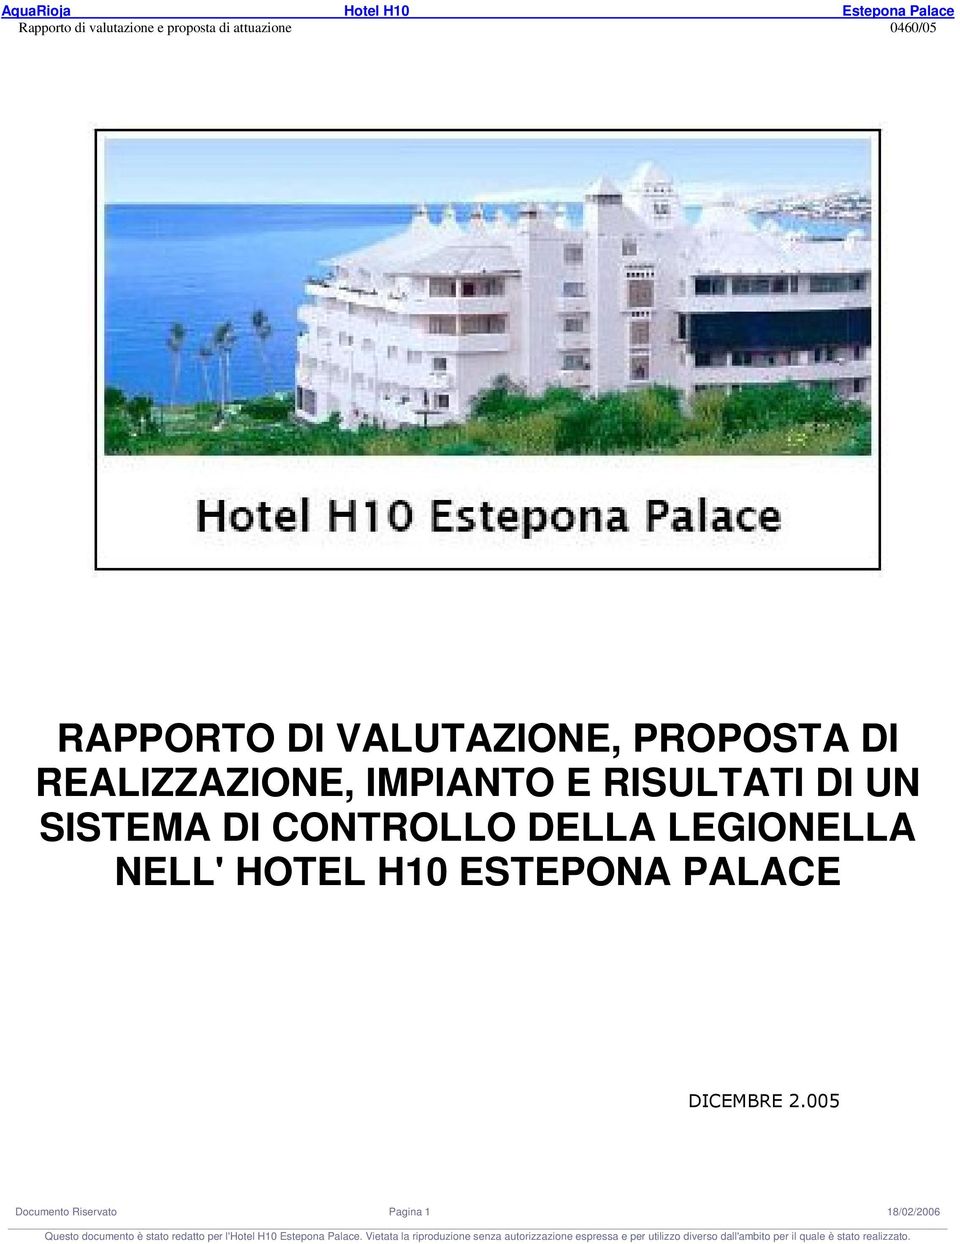 DI CONTROLLO DELLA LEGIONELLA NELL' HOTEL H10